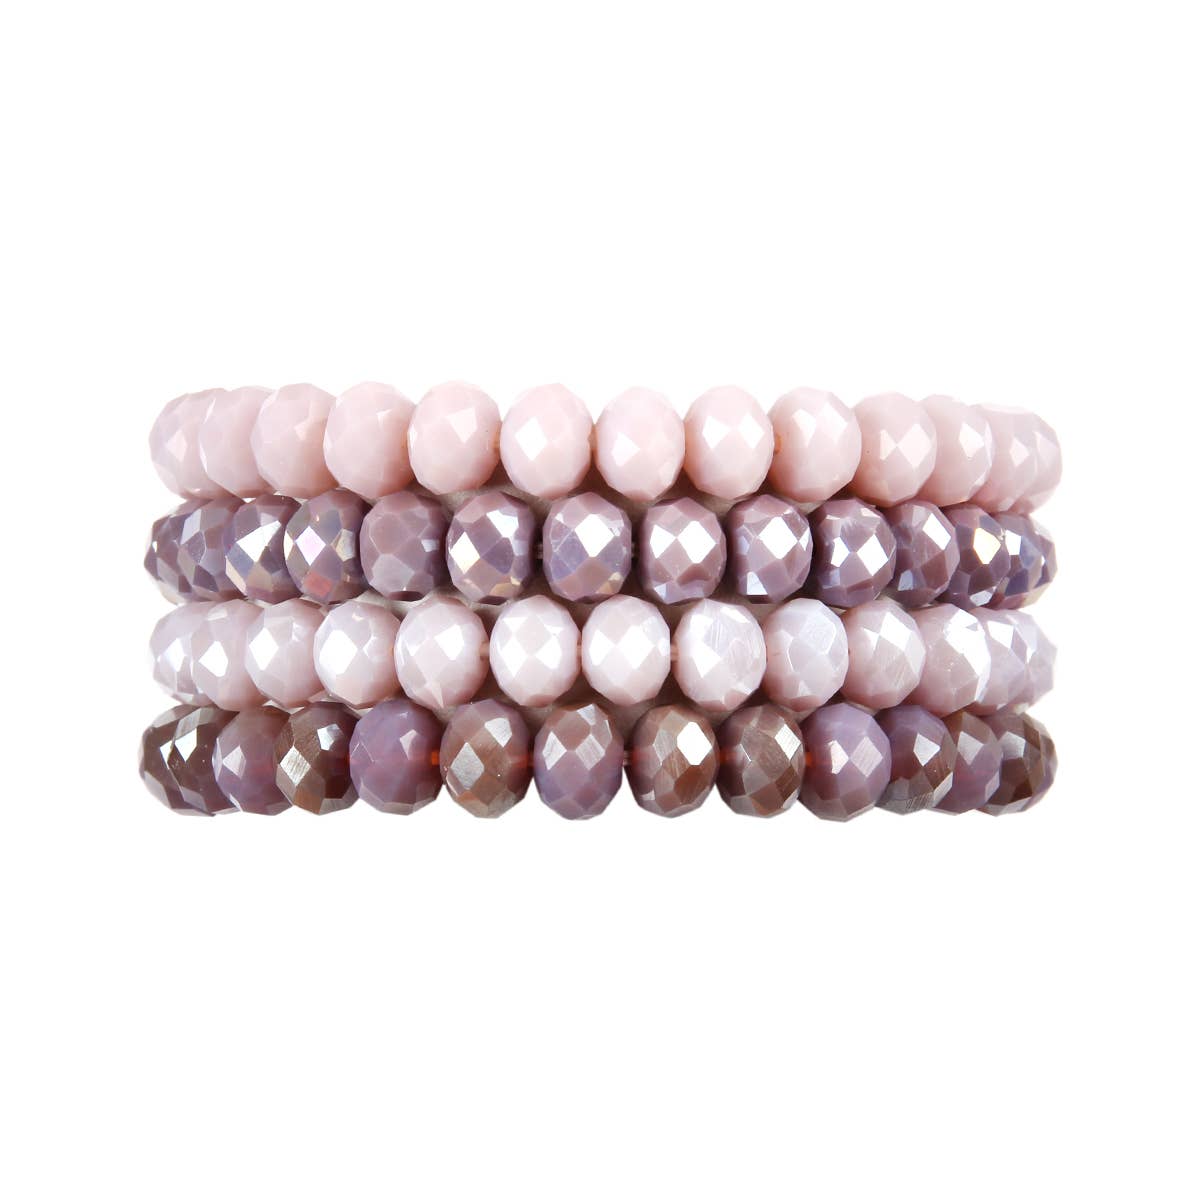 HDB2259 - Four Line Crystal Beads Stretch Bracelet